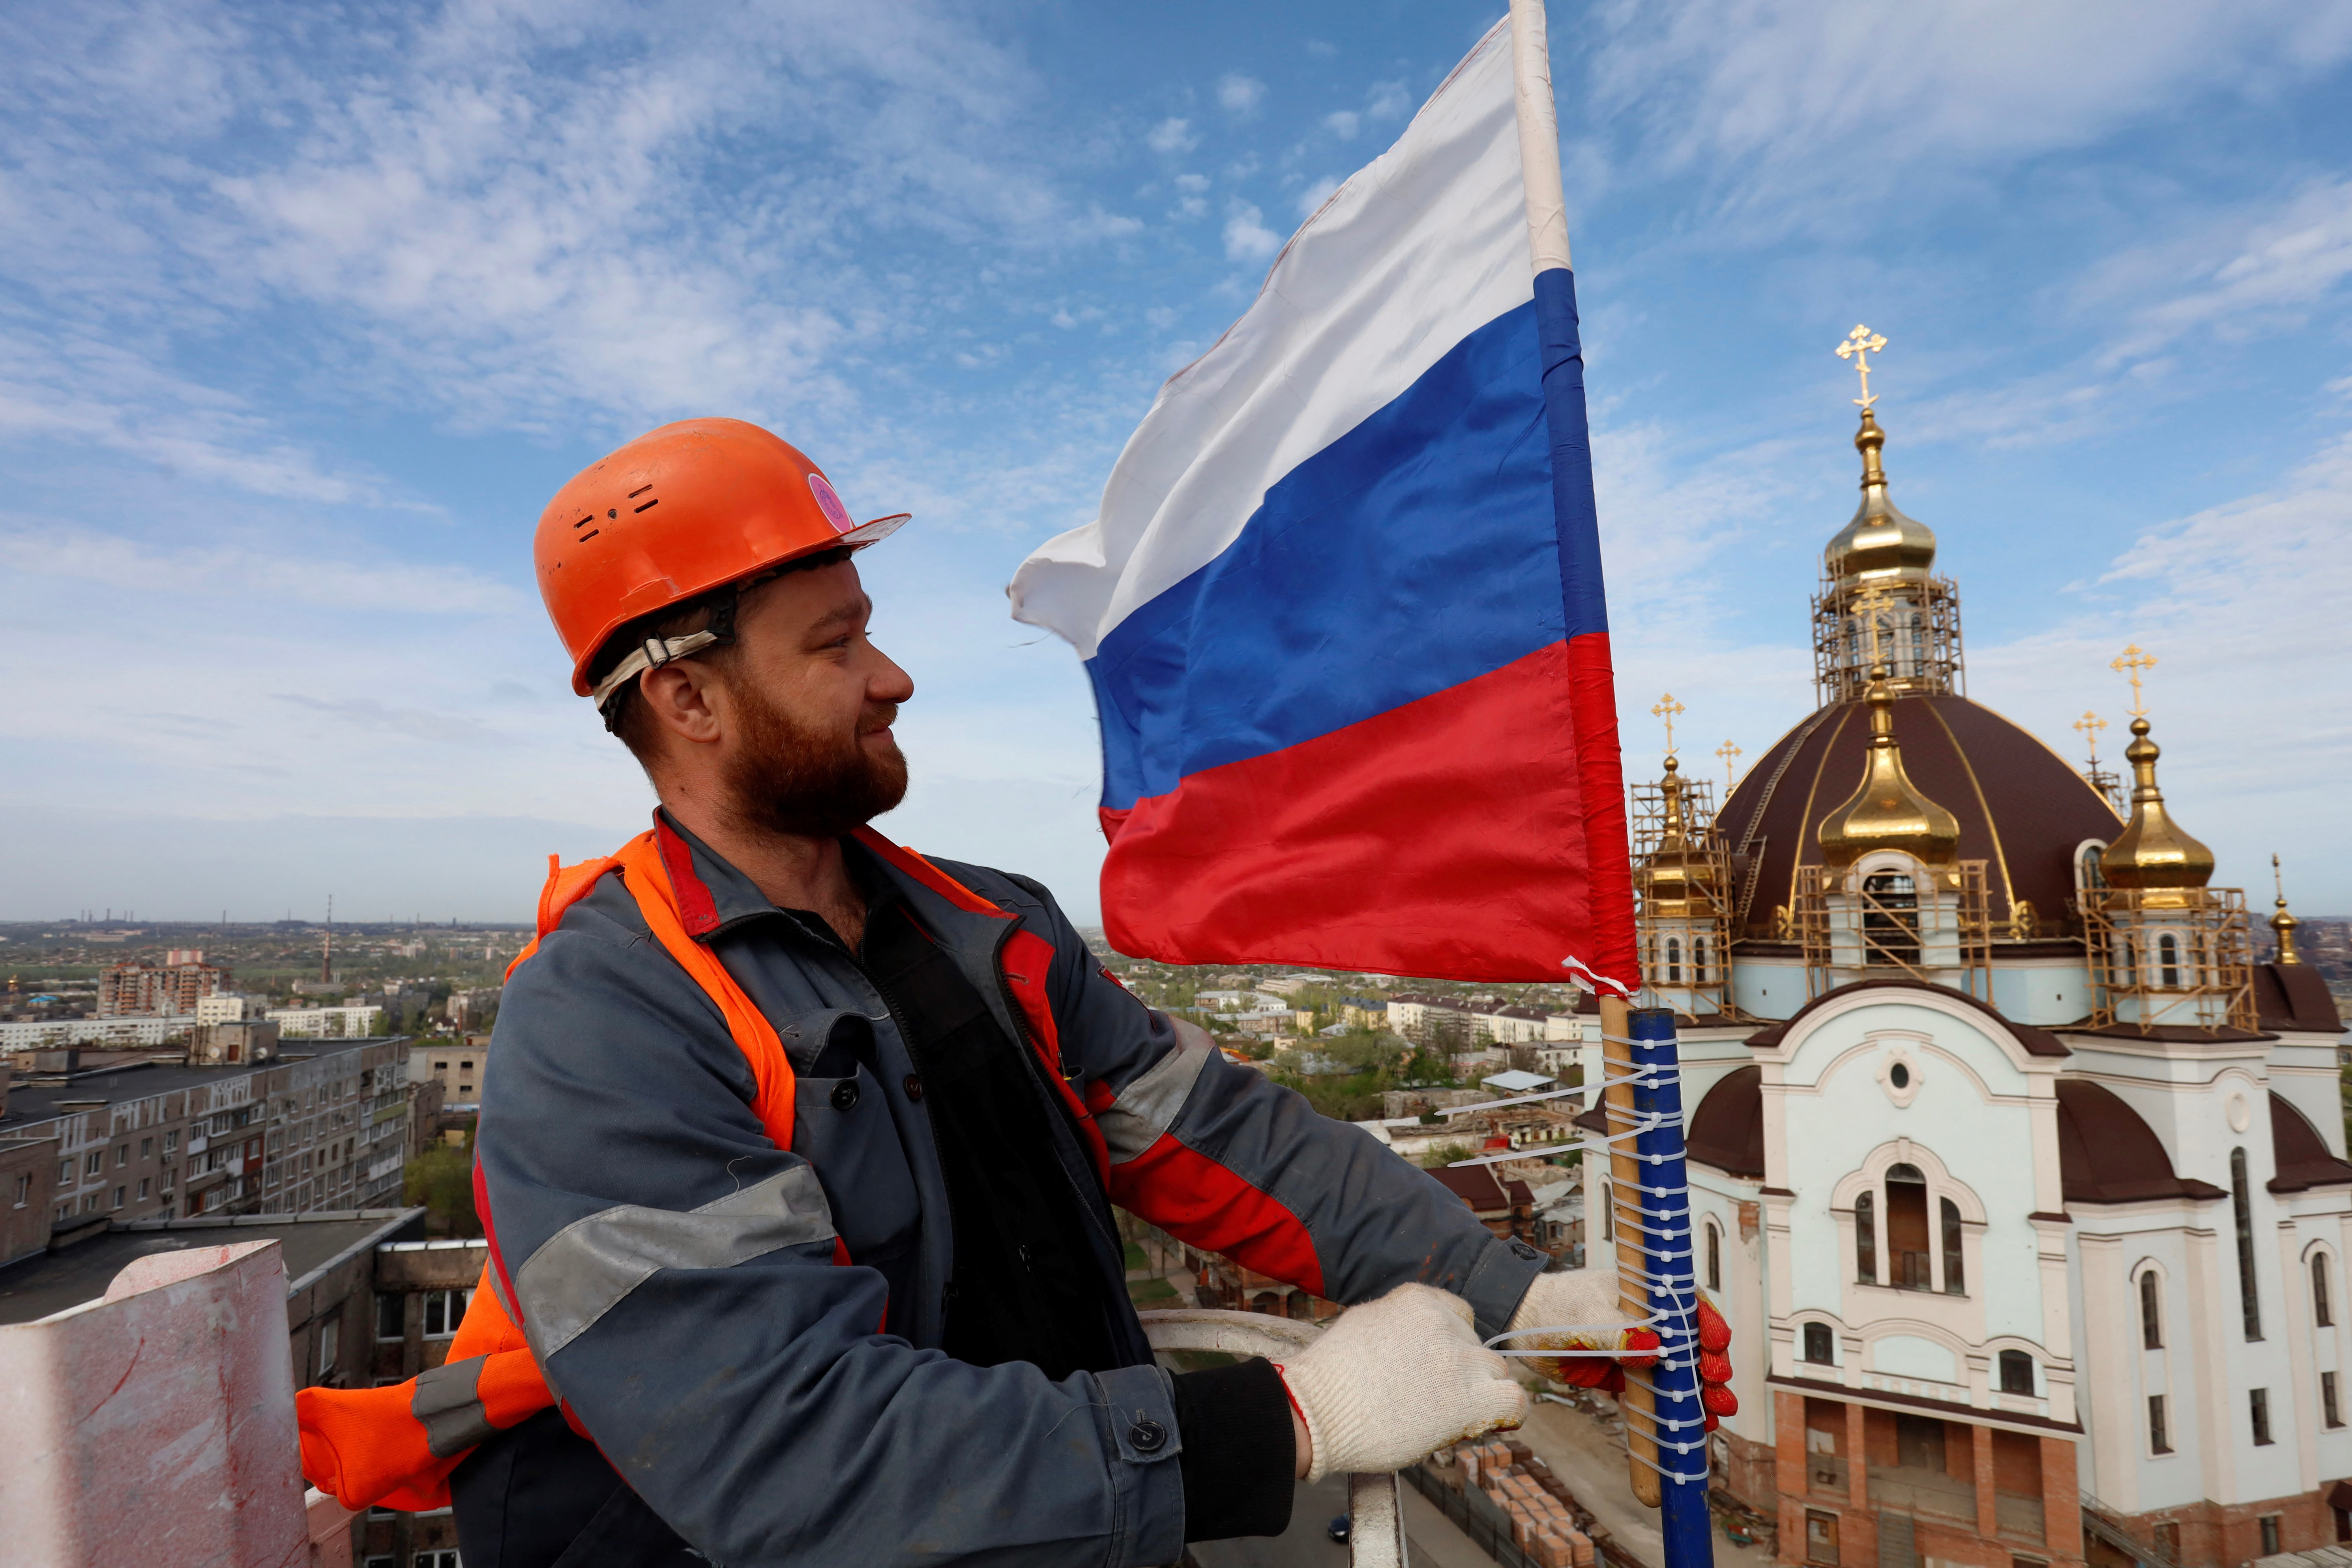 Marioupol, le 17 avril. Un ouvrier du bâtiment attache le drapeau de la Russie au sommet d'un château d'eau dans cette ville sous contrôle russe dans le sud-est de l'Ukraine. AFP